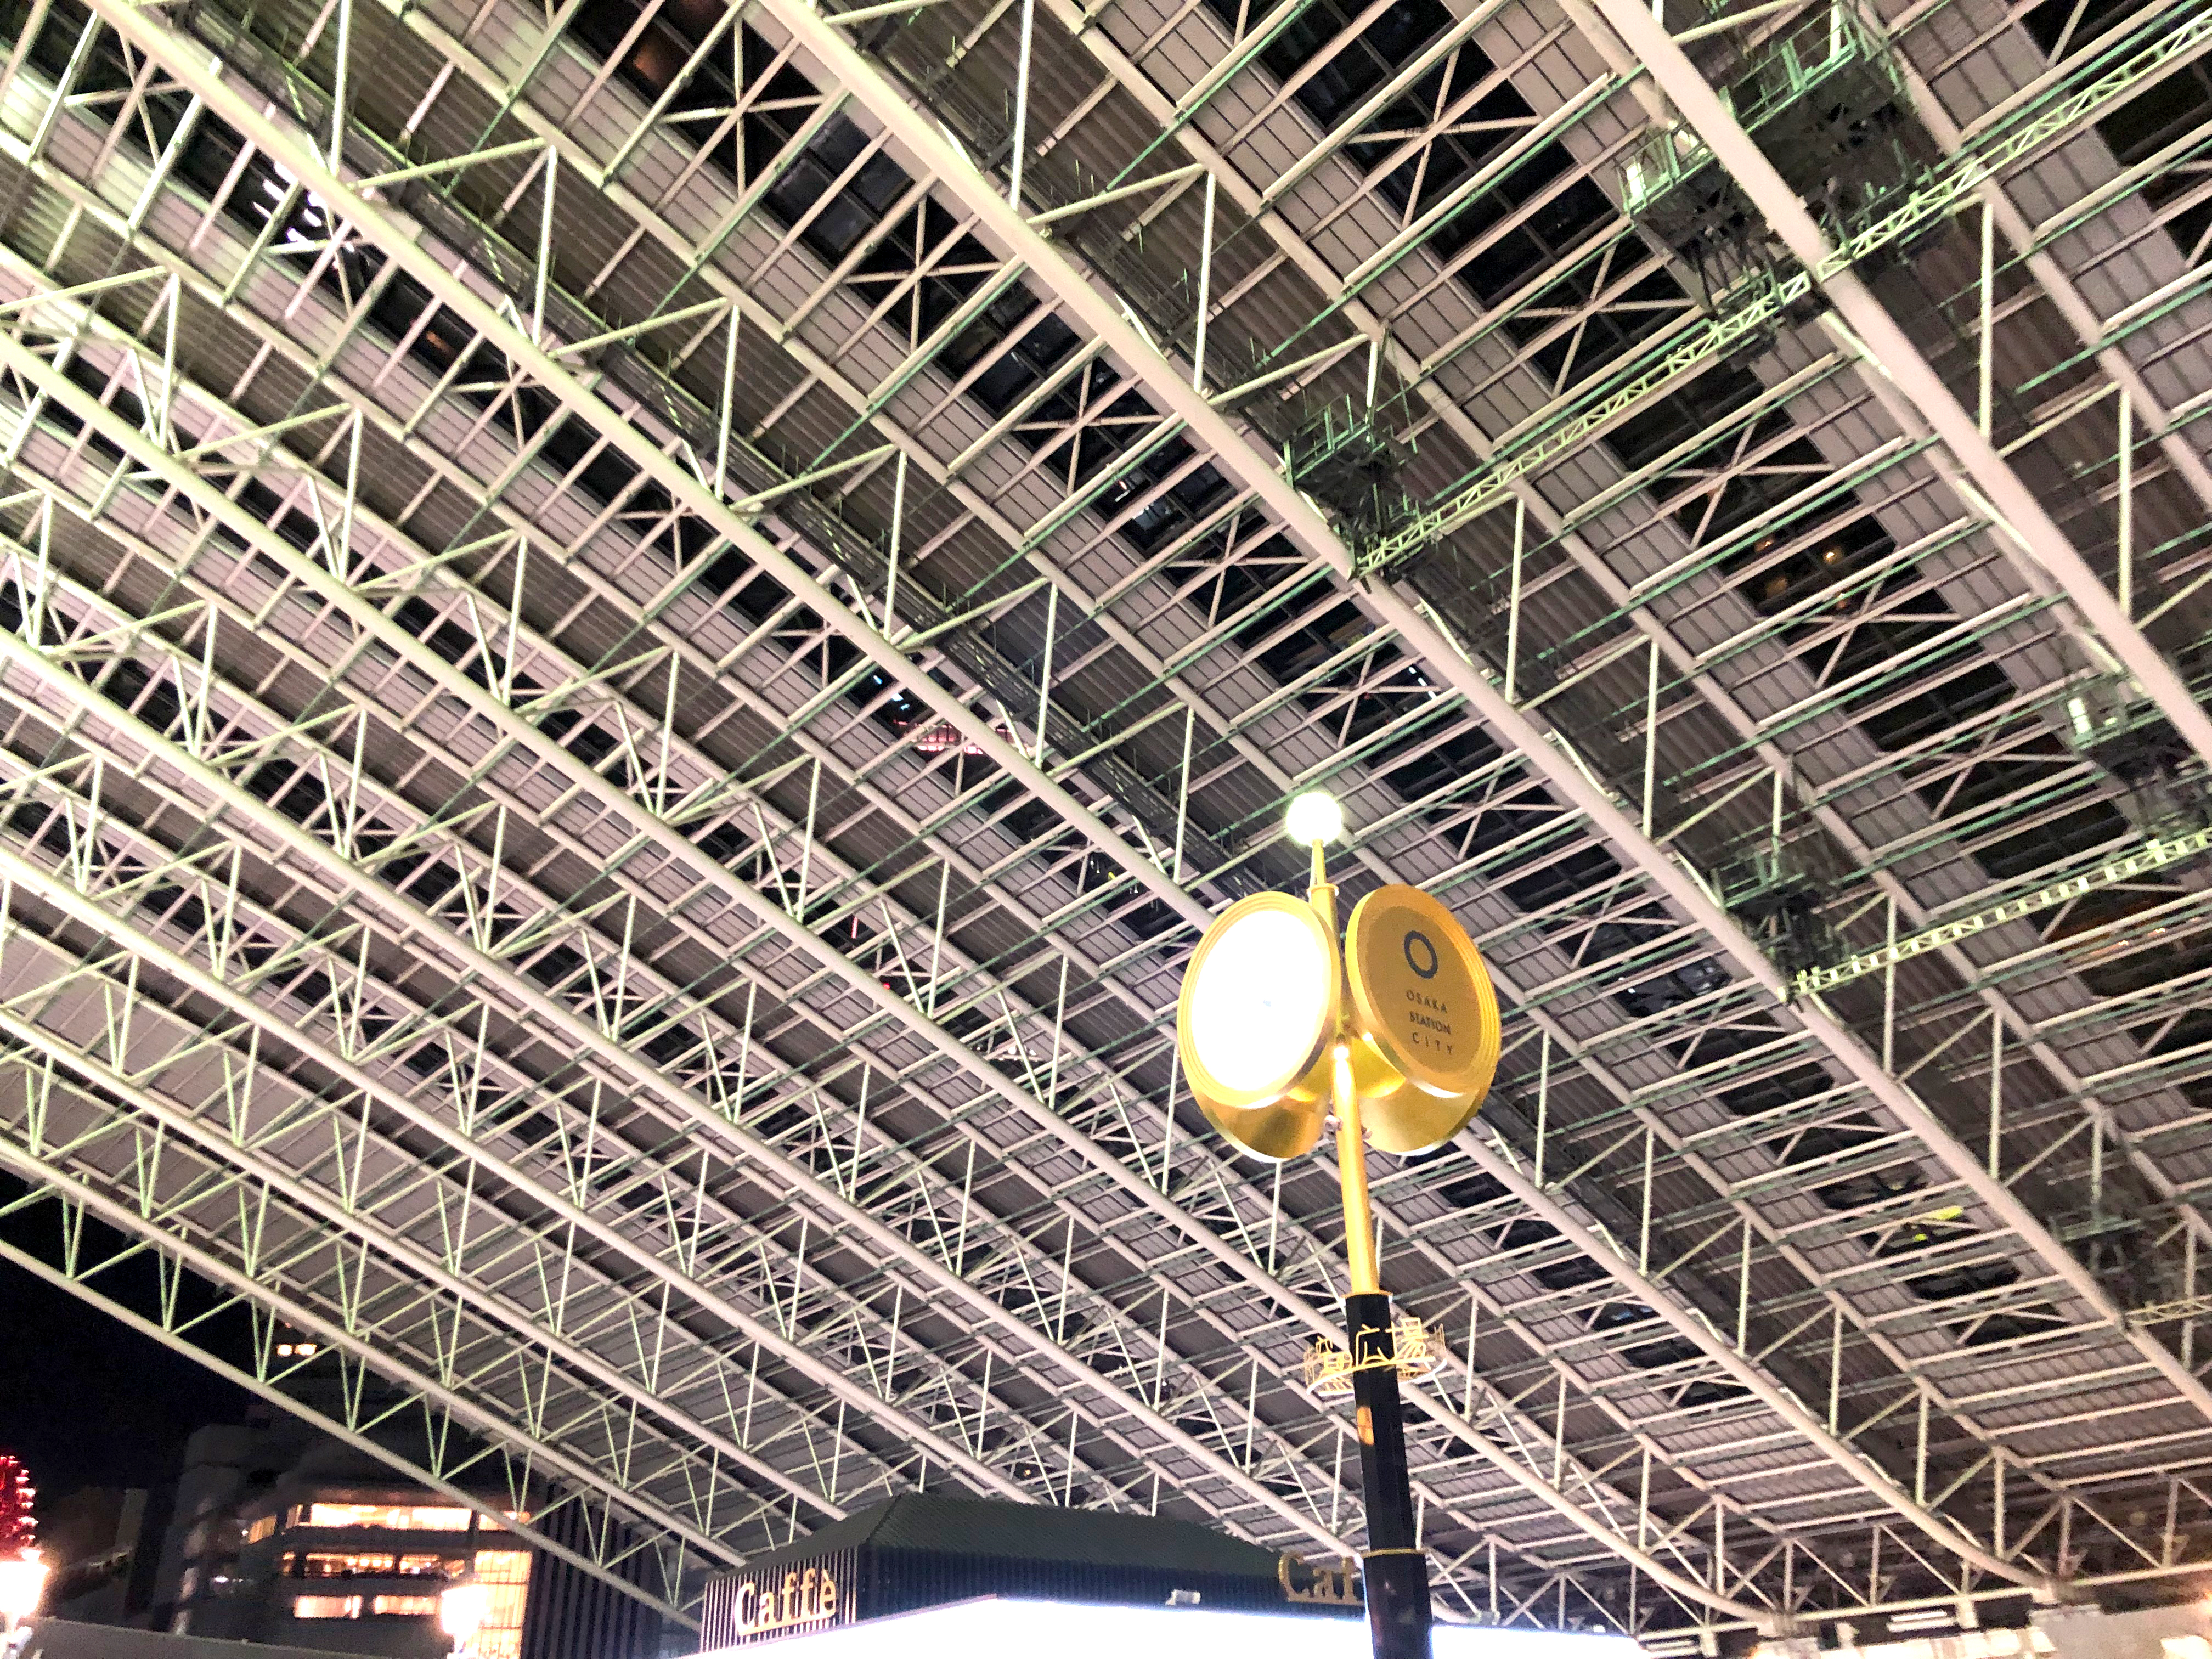 夜の大阪駅時空 とき の広場の天井 1 無料写真 フリー素材のダウンロードサイト もある